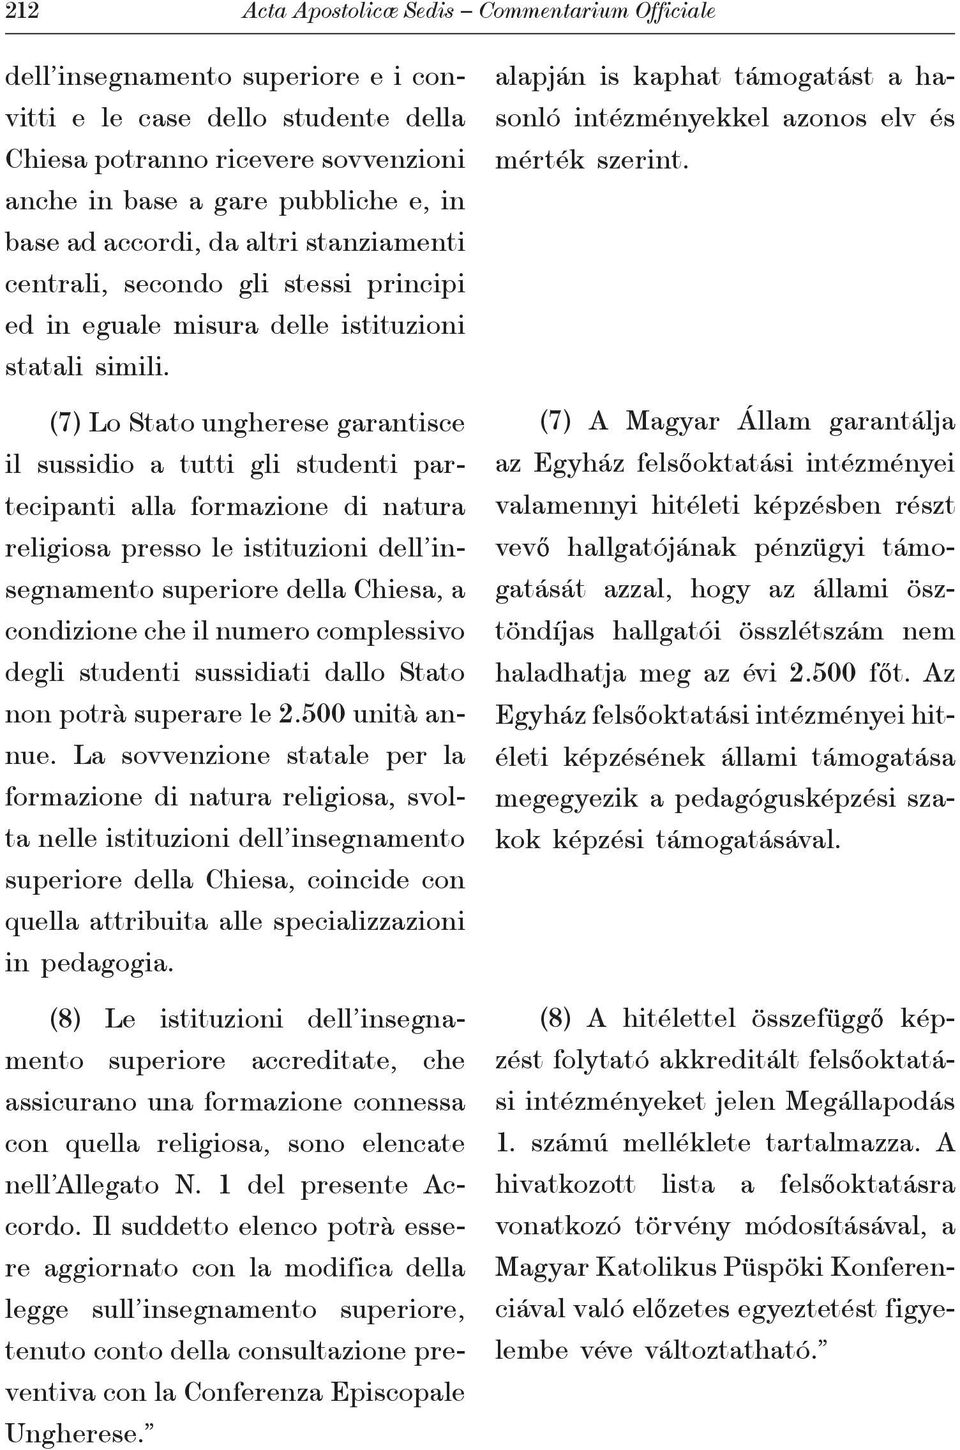 (7) Lo Stato ungherese garantisce il sussidio a tutti gli studenti partecipanti alla formazione di natura religiosa presso le istituzioni dell insegnamento superiore della Chiesa, a condizione che il